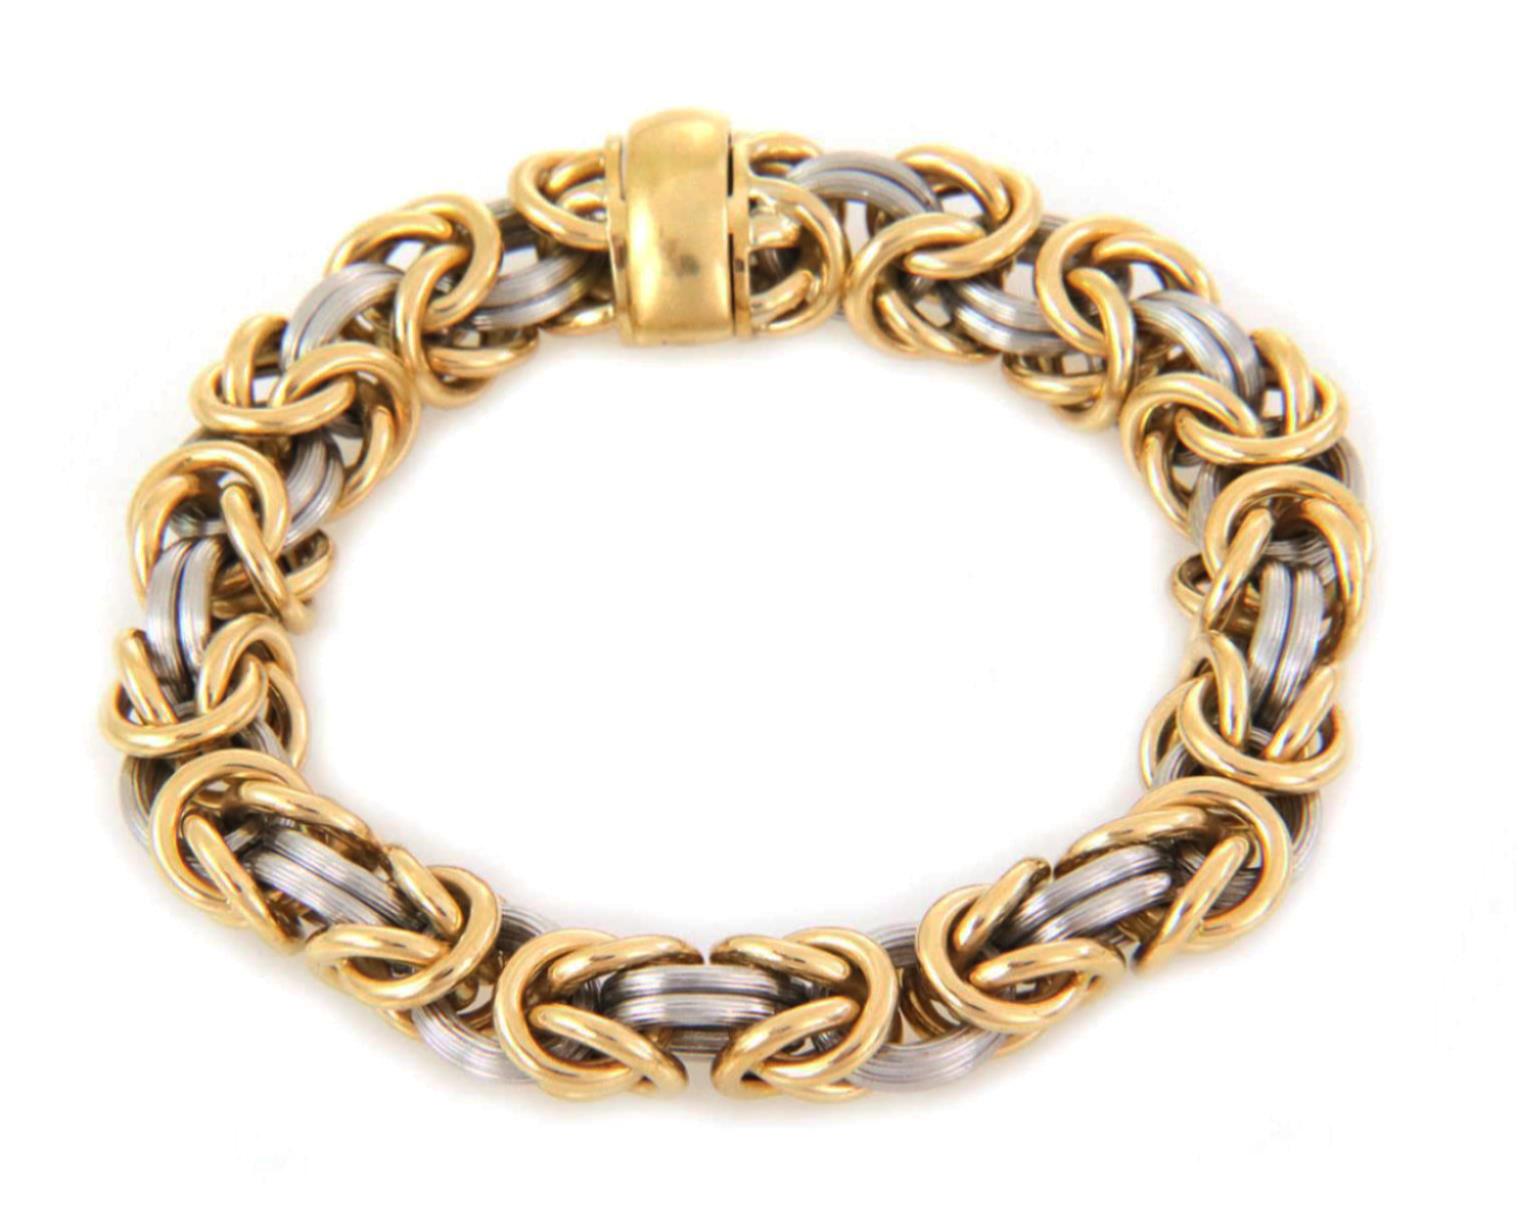 Ce bracelet audacieux et tendance du designer ROM Germany est réalisé en or jaune 18 carats et en platine. Il est composé de maillons byzantins de 8 mm d'épaisseur, de maillons en or jaune poli et de maillons annulaires en platine finement cannelés.